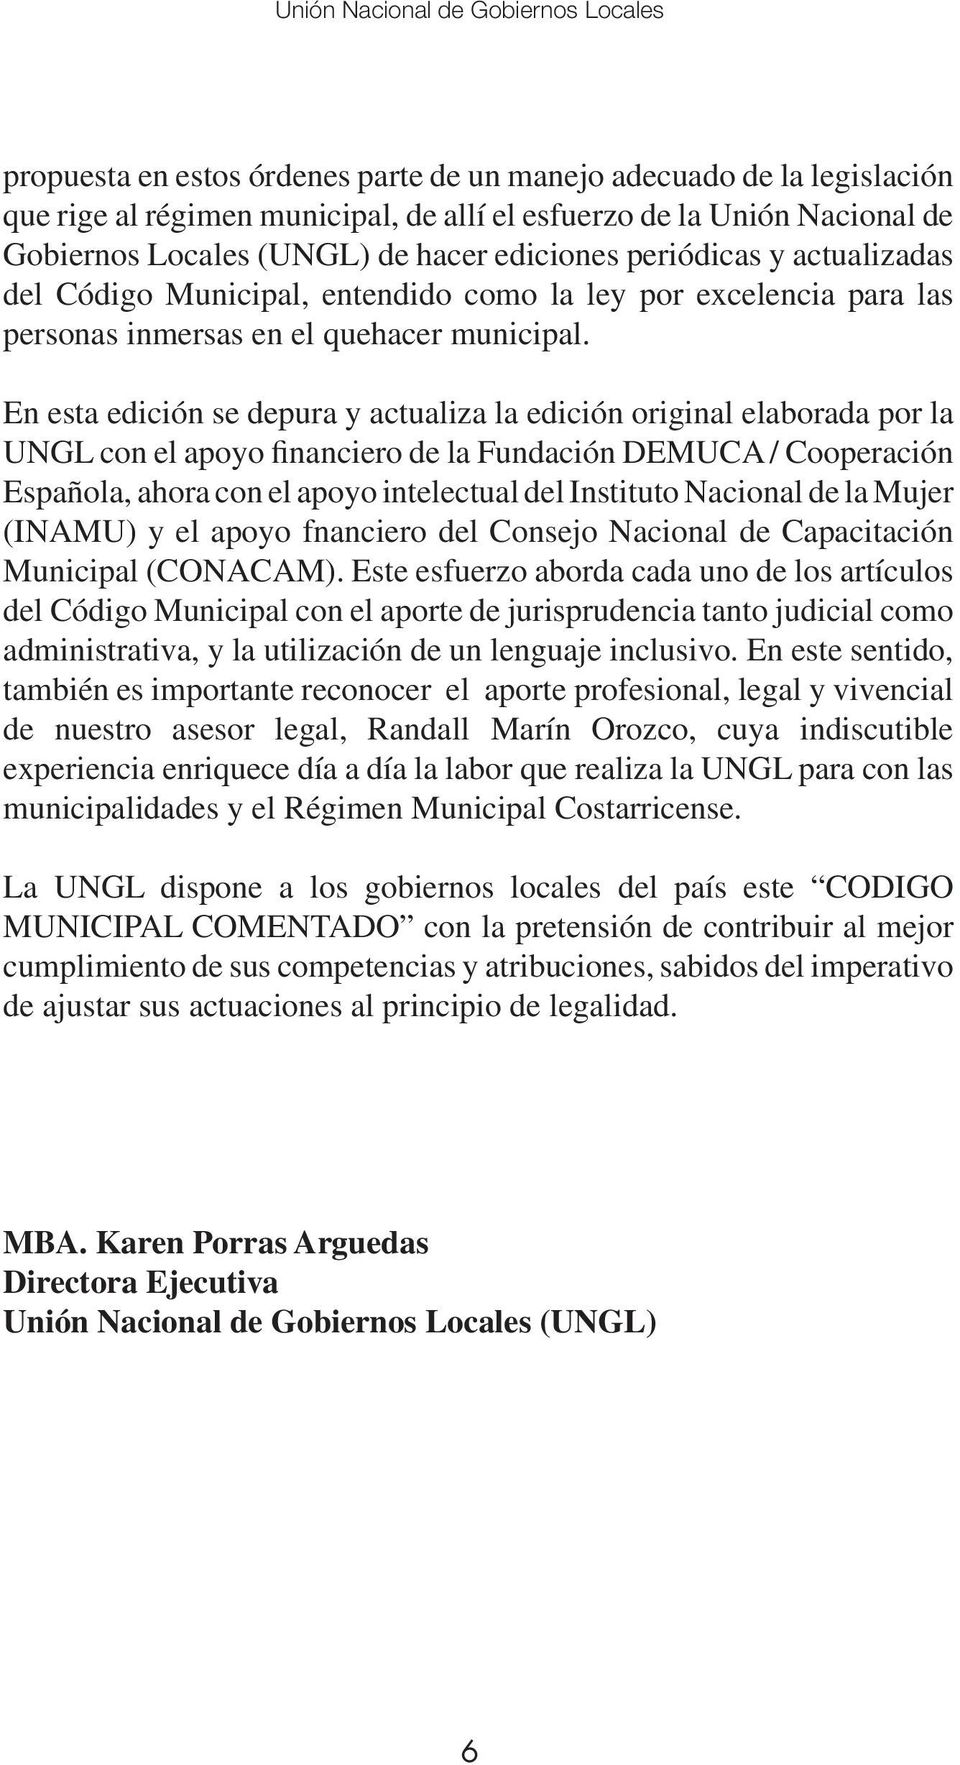 En esta edición se depura y actualiza la edición original elaborada por la UNGL con el apoyo financiero de la Fundación DEMUCA / Cooperación Española, ahora con el apoyo intelectual del Instituto